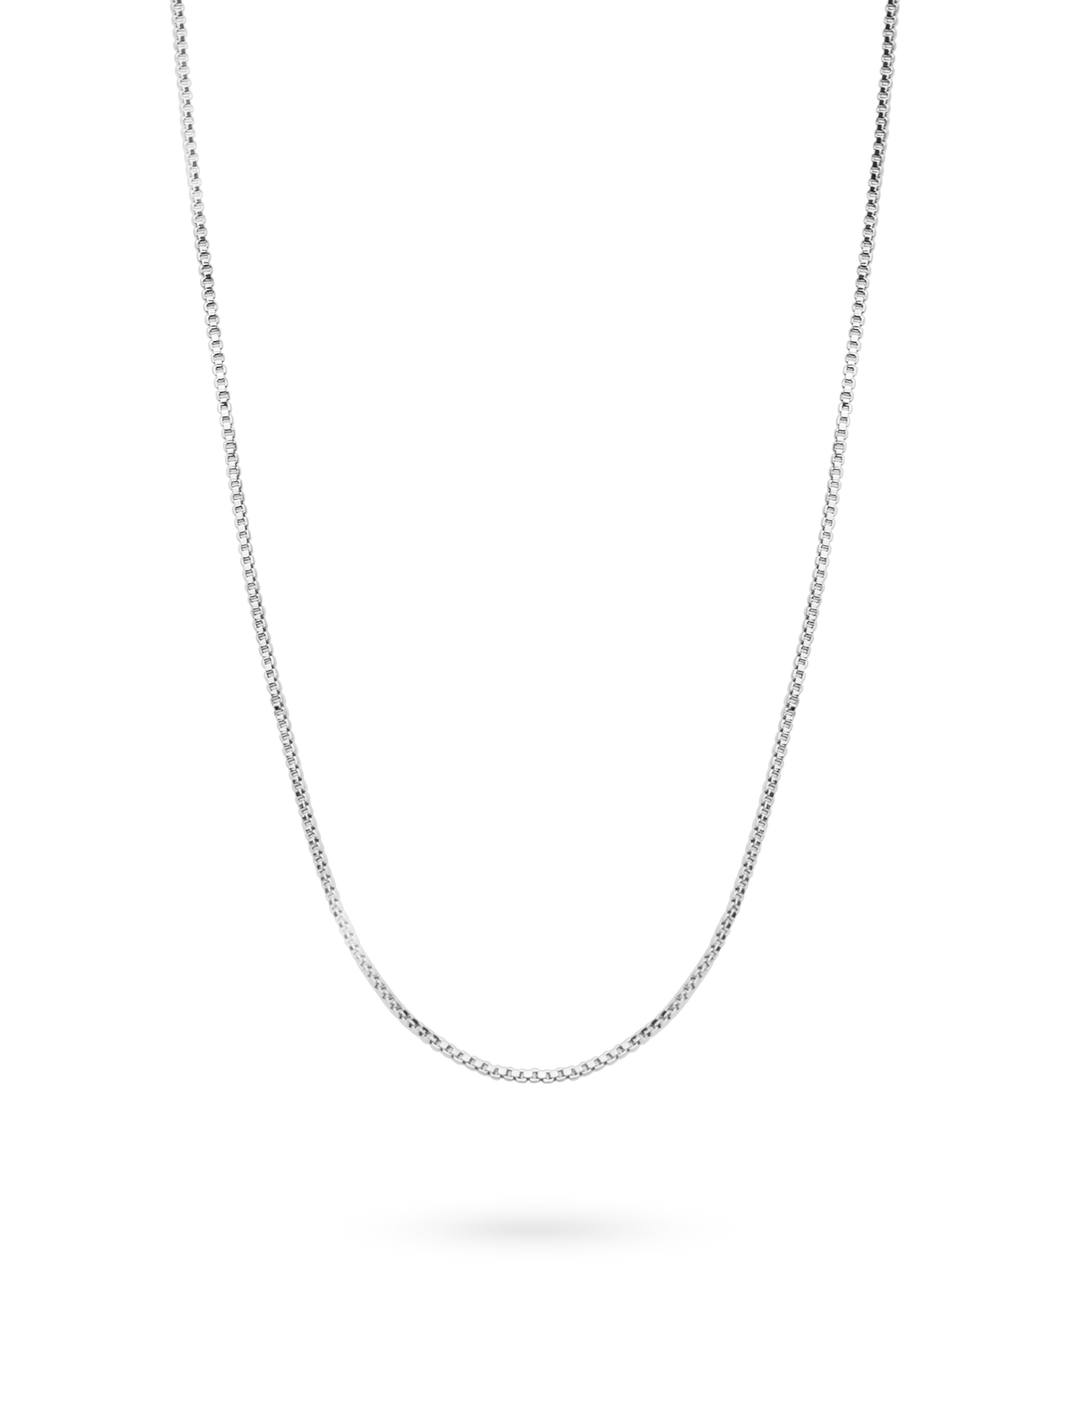 silver minimalistic box chain necklace